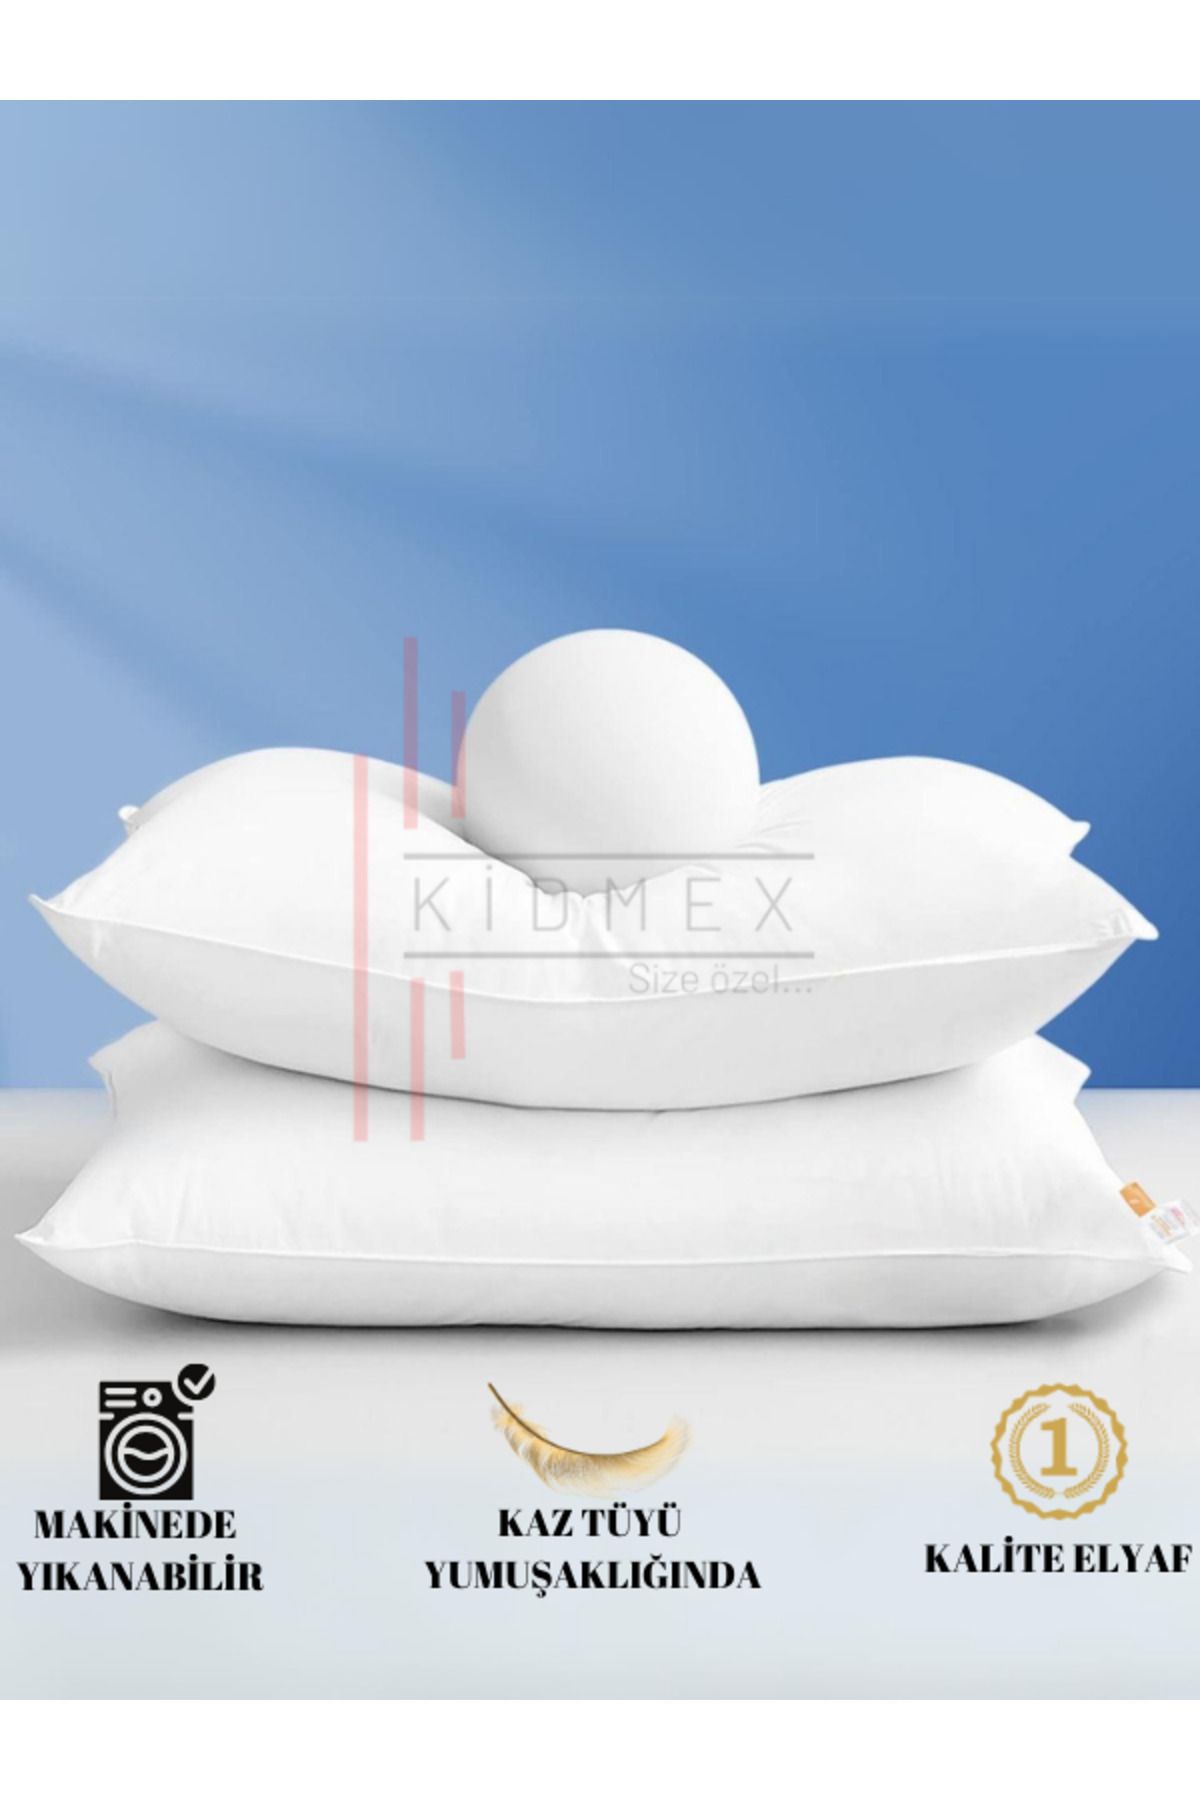 Kidmex 2 Adet Rulo Pack Premium Yüksek Yastık (1 ADET 800GR)